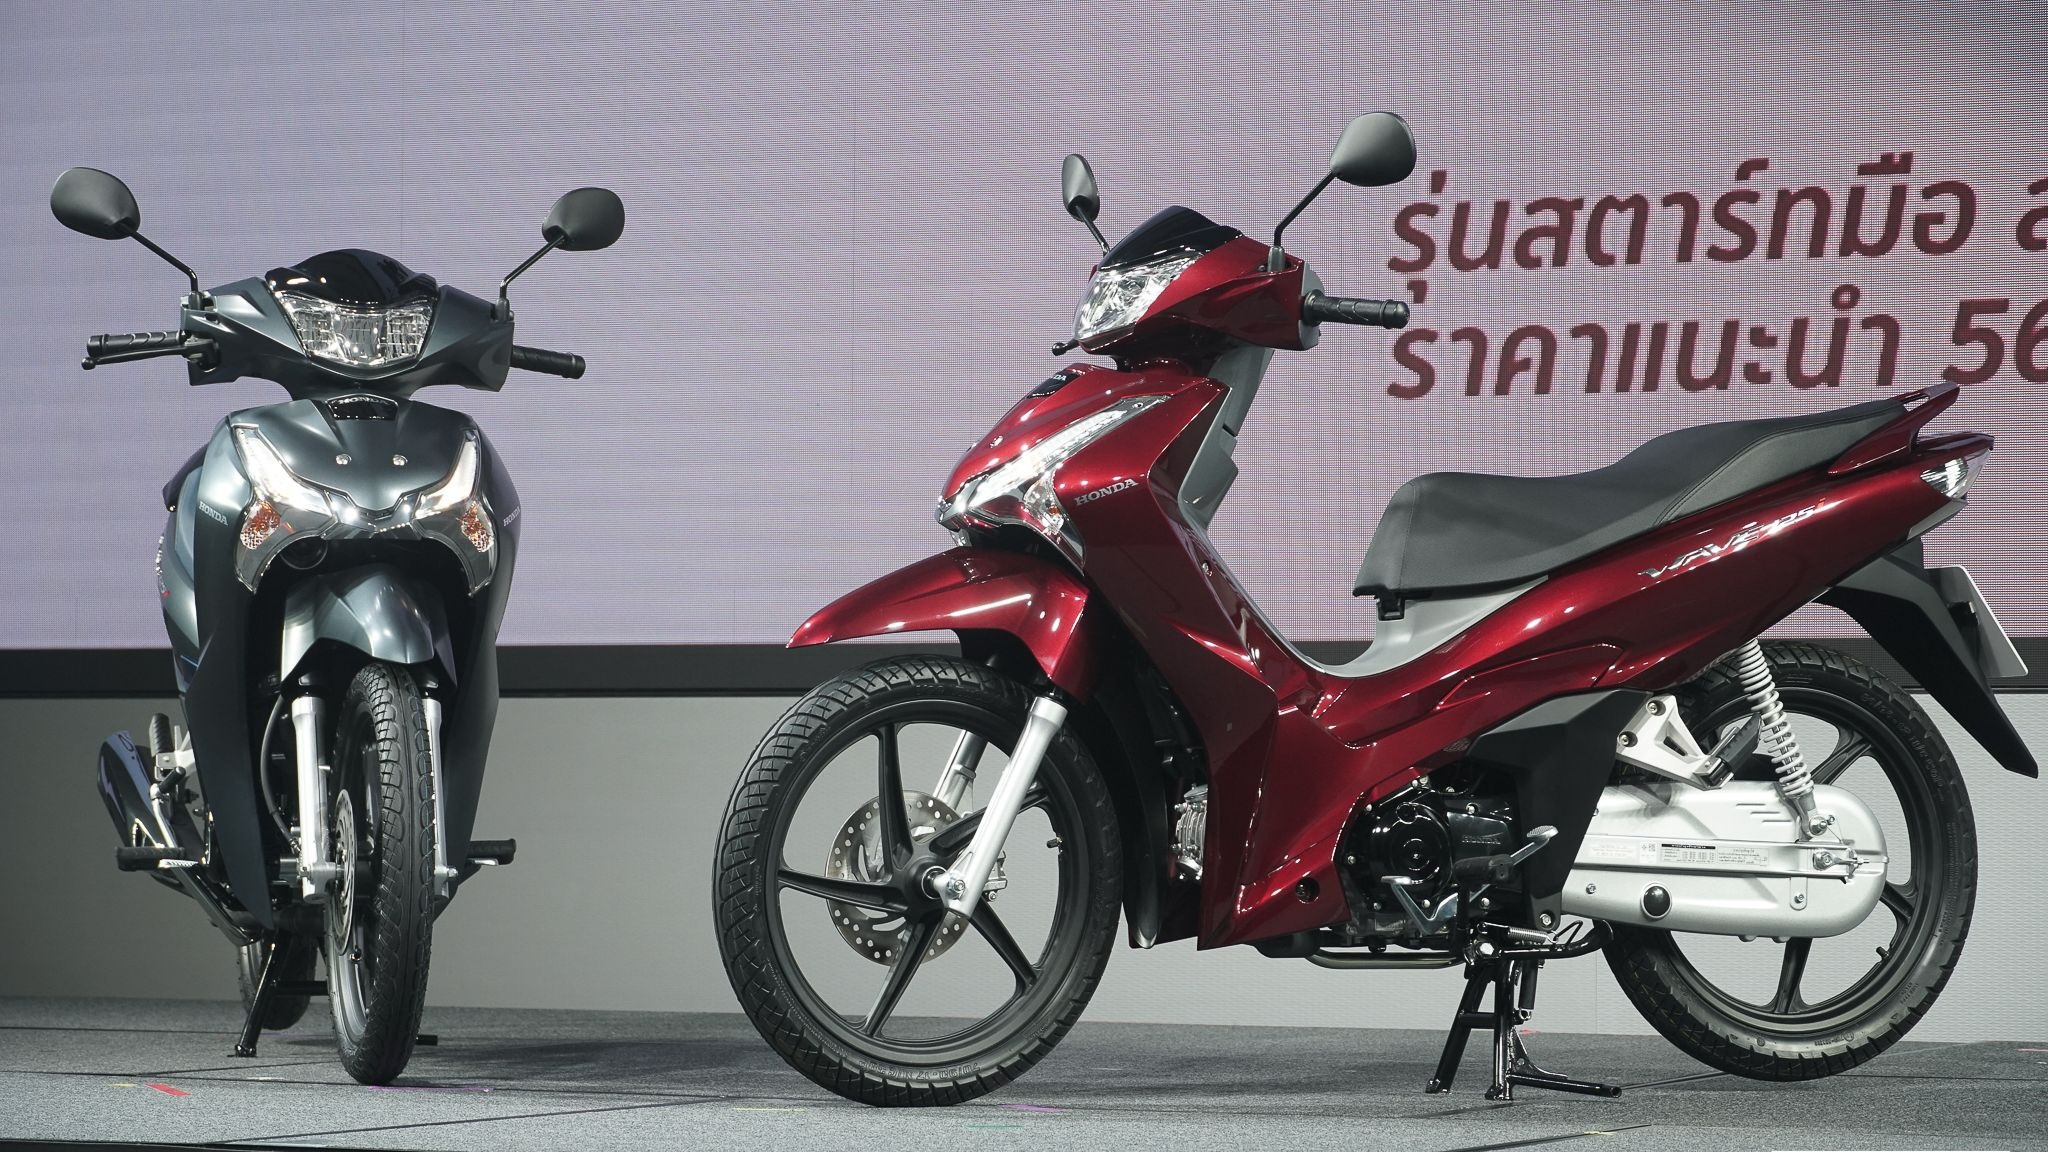 Honda ra mắt xe tay ga bản mới siêu tiết kiệm xăng đầy bình đi gần 250km